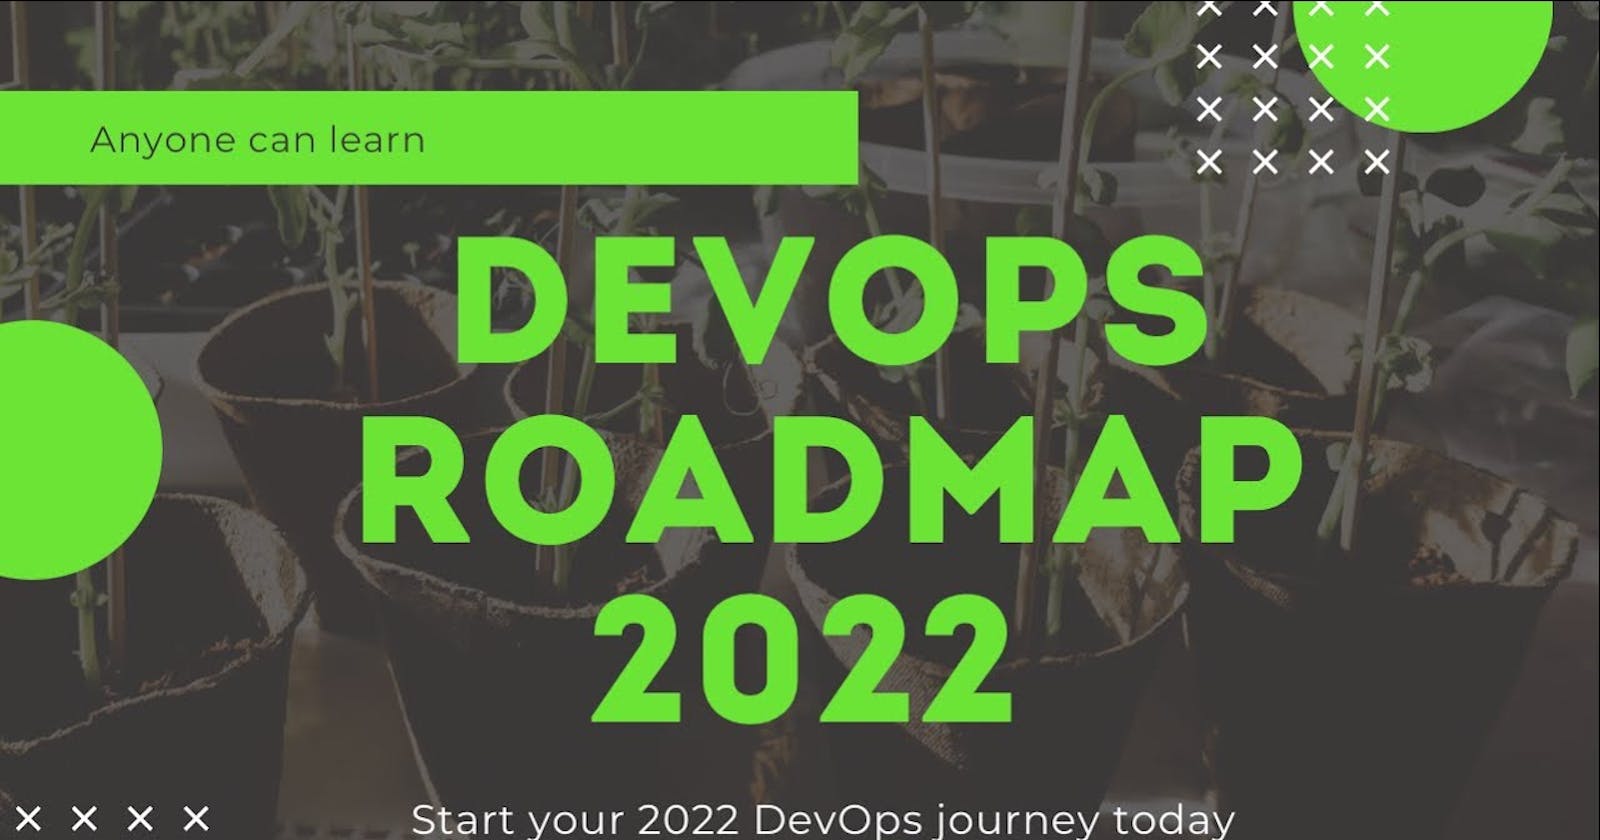 A DevOps Roadmap